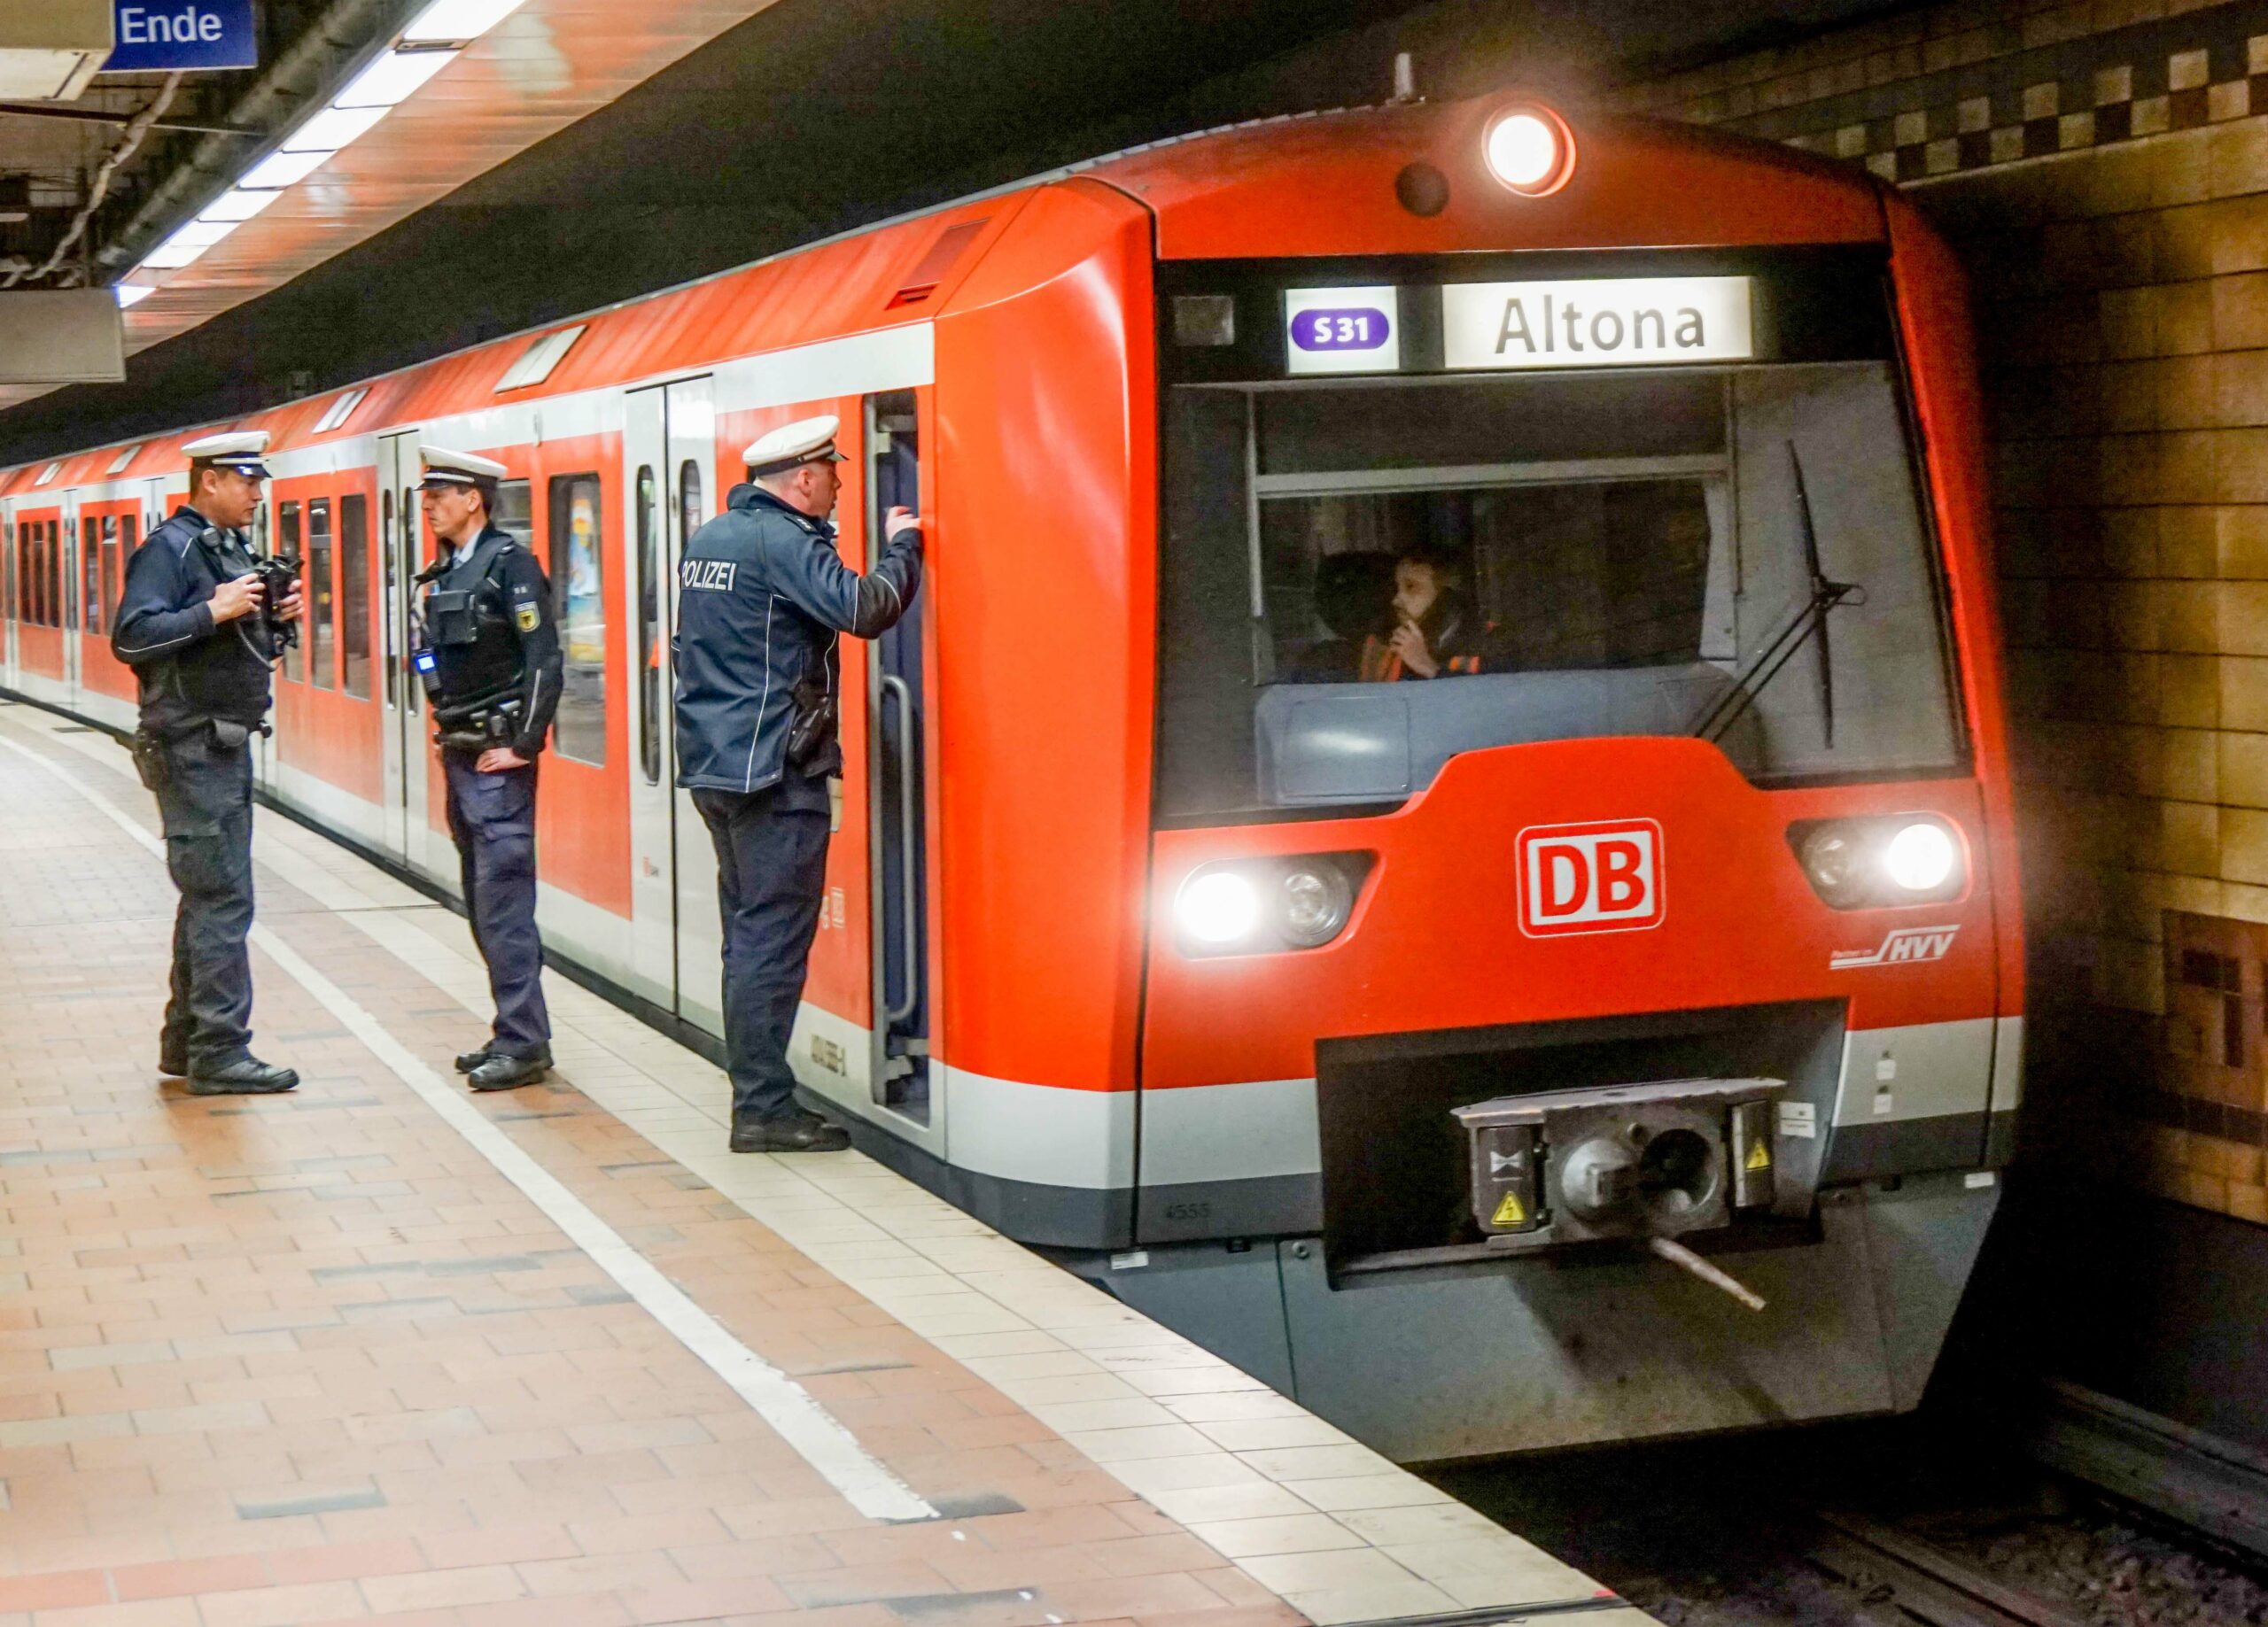 Drei Polizisten stehen neben einem Zug der Linie S31 im Bahnhof Altona.